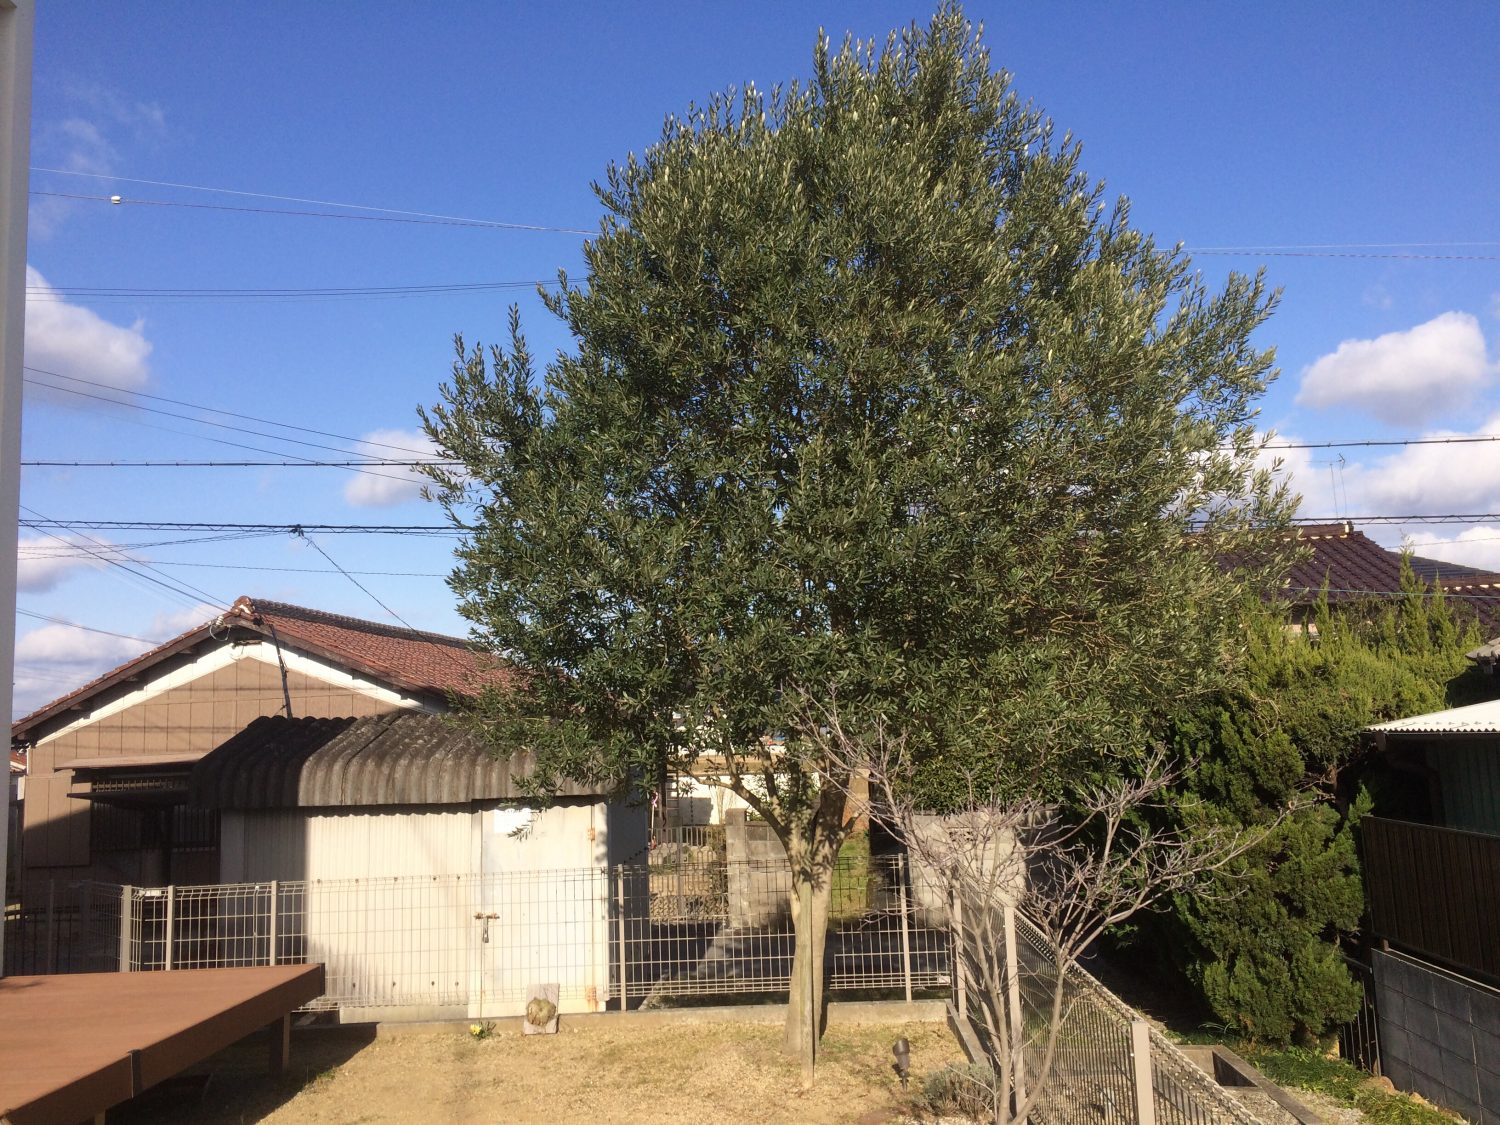 兵庫県加古川市のi様邸にてオリーブの剪定を行いました 加古川市で作庭 外構 剪定 消毒 施肥ならくまがい造園